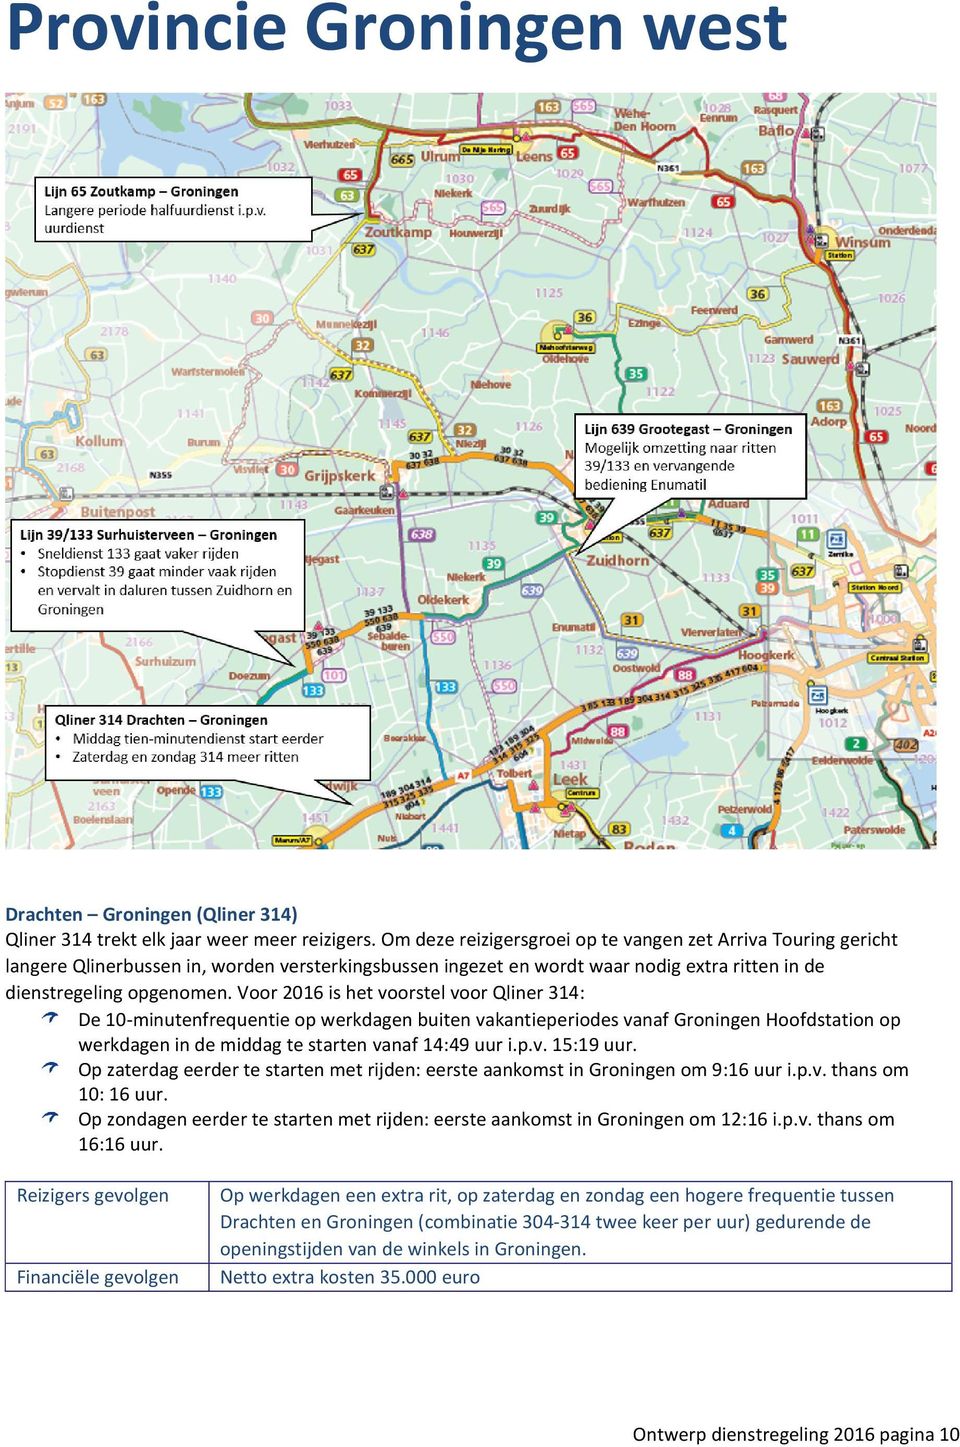 Voor 2016 is het voorstel voor Qliner 314: De 10-minutenfrequentie op werkdagen buiten vakantieperiodes vanaf Groningen Hoofdstation op werkdagen in de middag te starten vanaf 14:49 uur i.p.v. 15:19 uur.